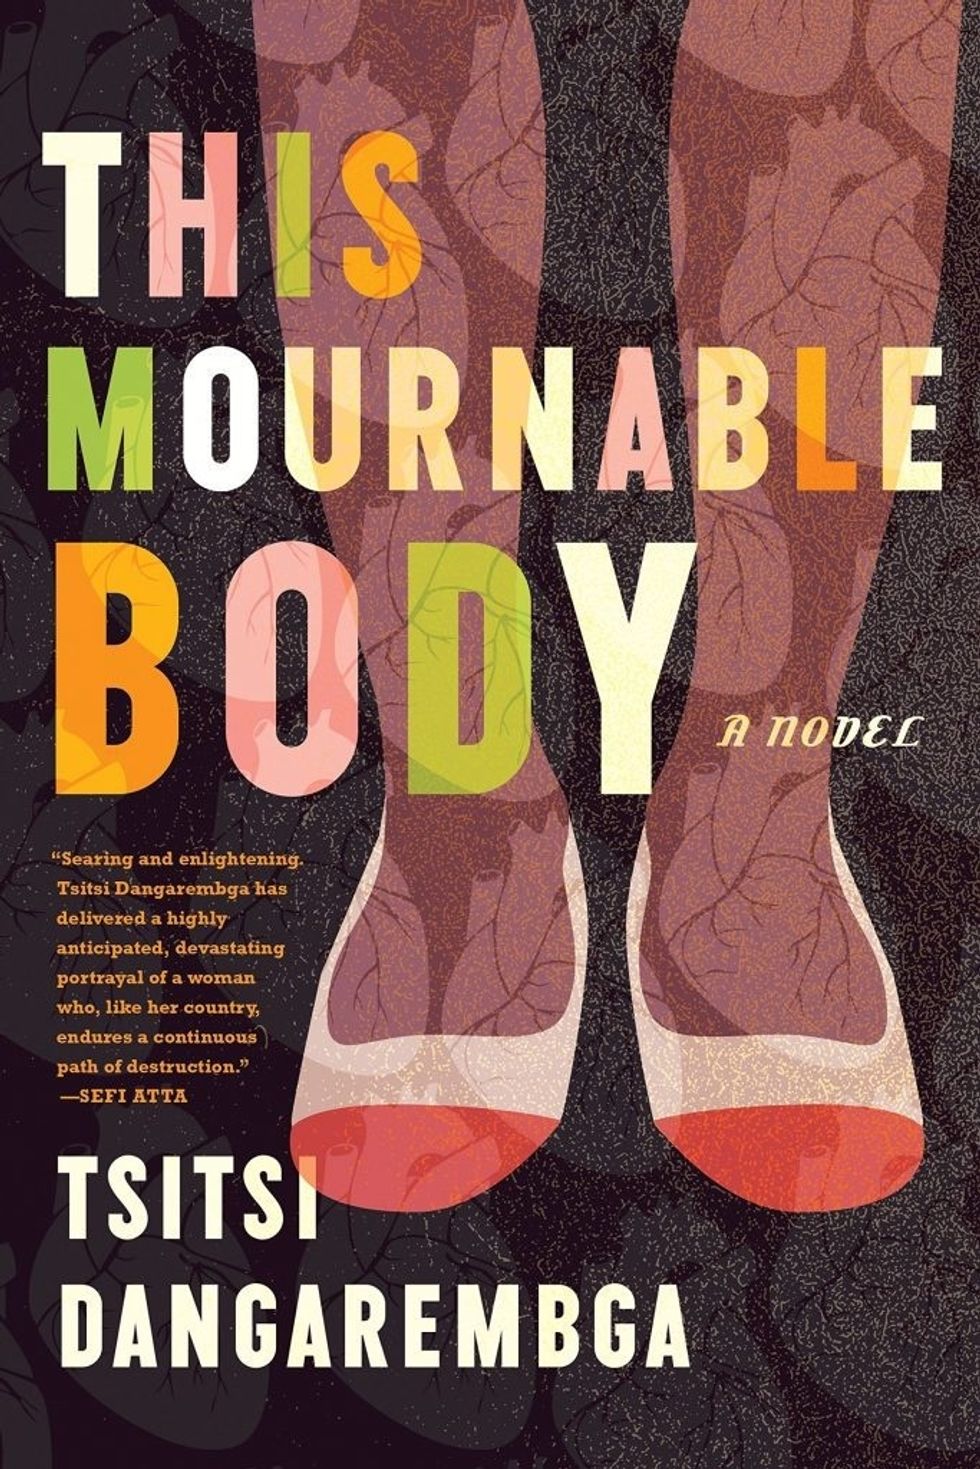 Tsitsi Dangarembga's Book 'This Mournable Body' is Finally Here